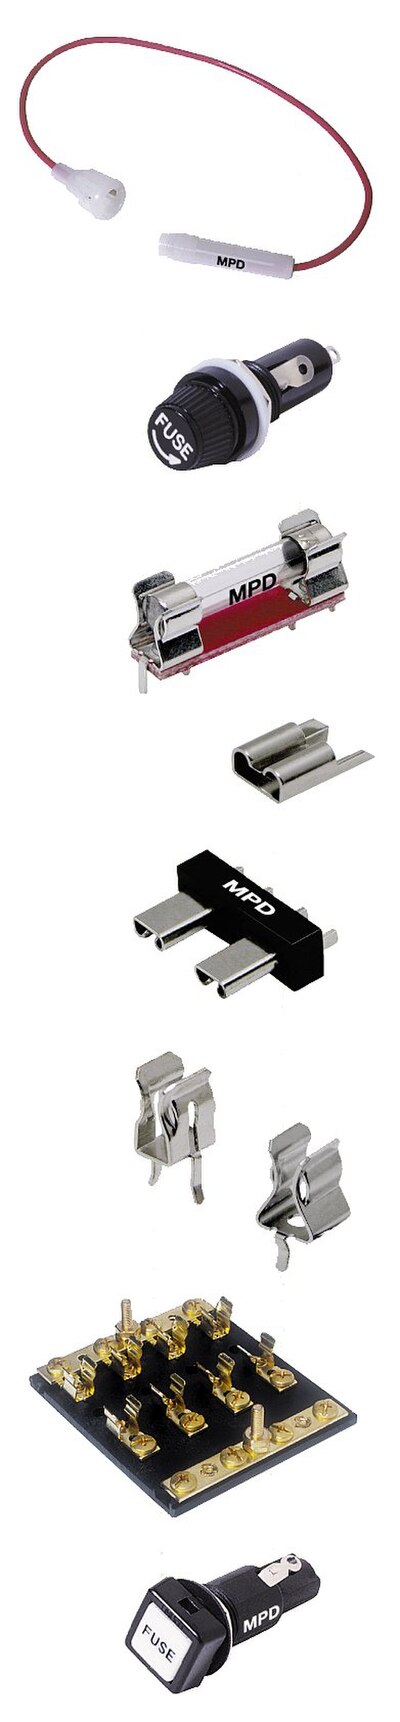 Various holders for cartridge ferrule fuses